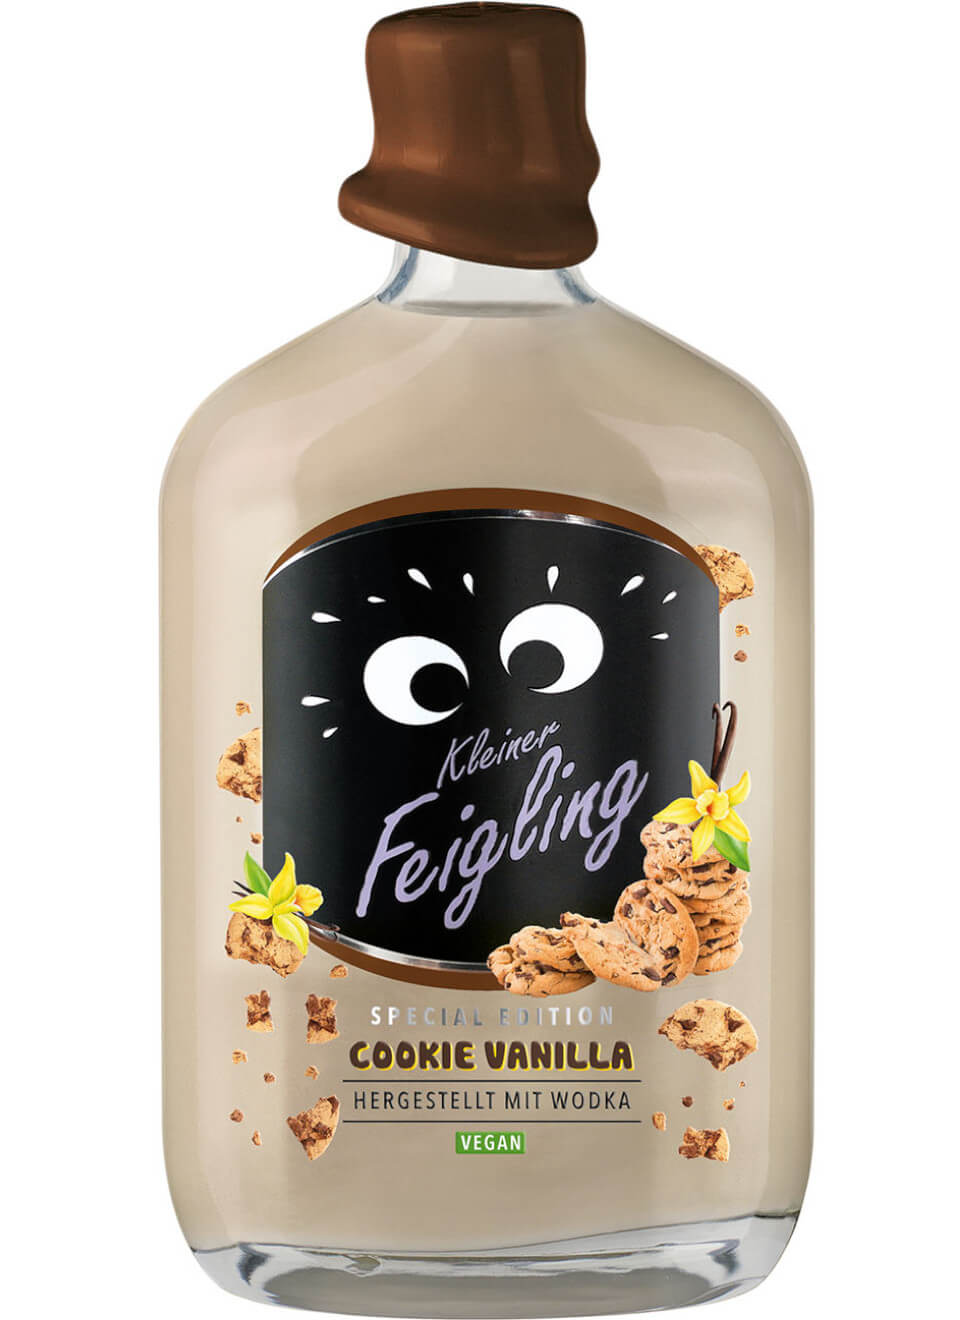 Kleiner Feigling Cookie Vanilla 0,5 L günstig kaufen | Spirituosenworld.de  - Online Shop für Spirituosen und Barzubehör